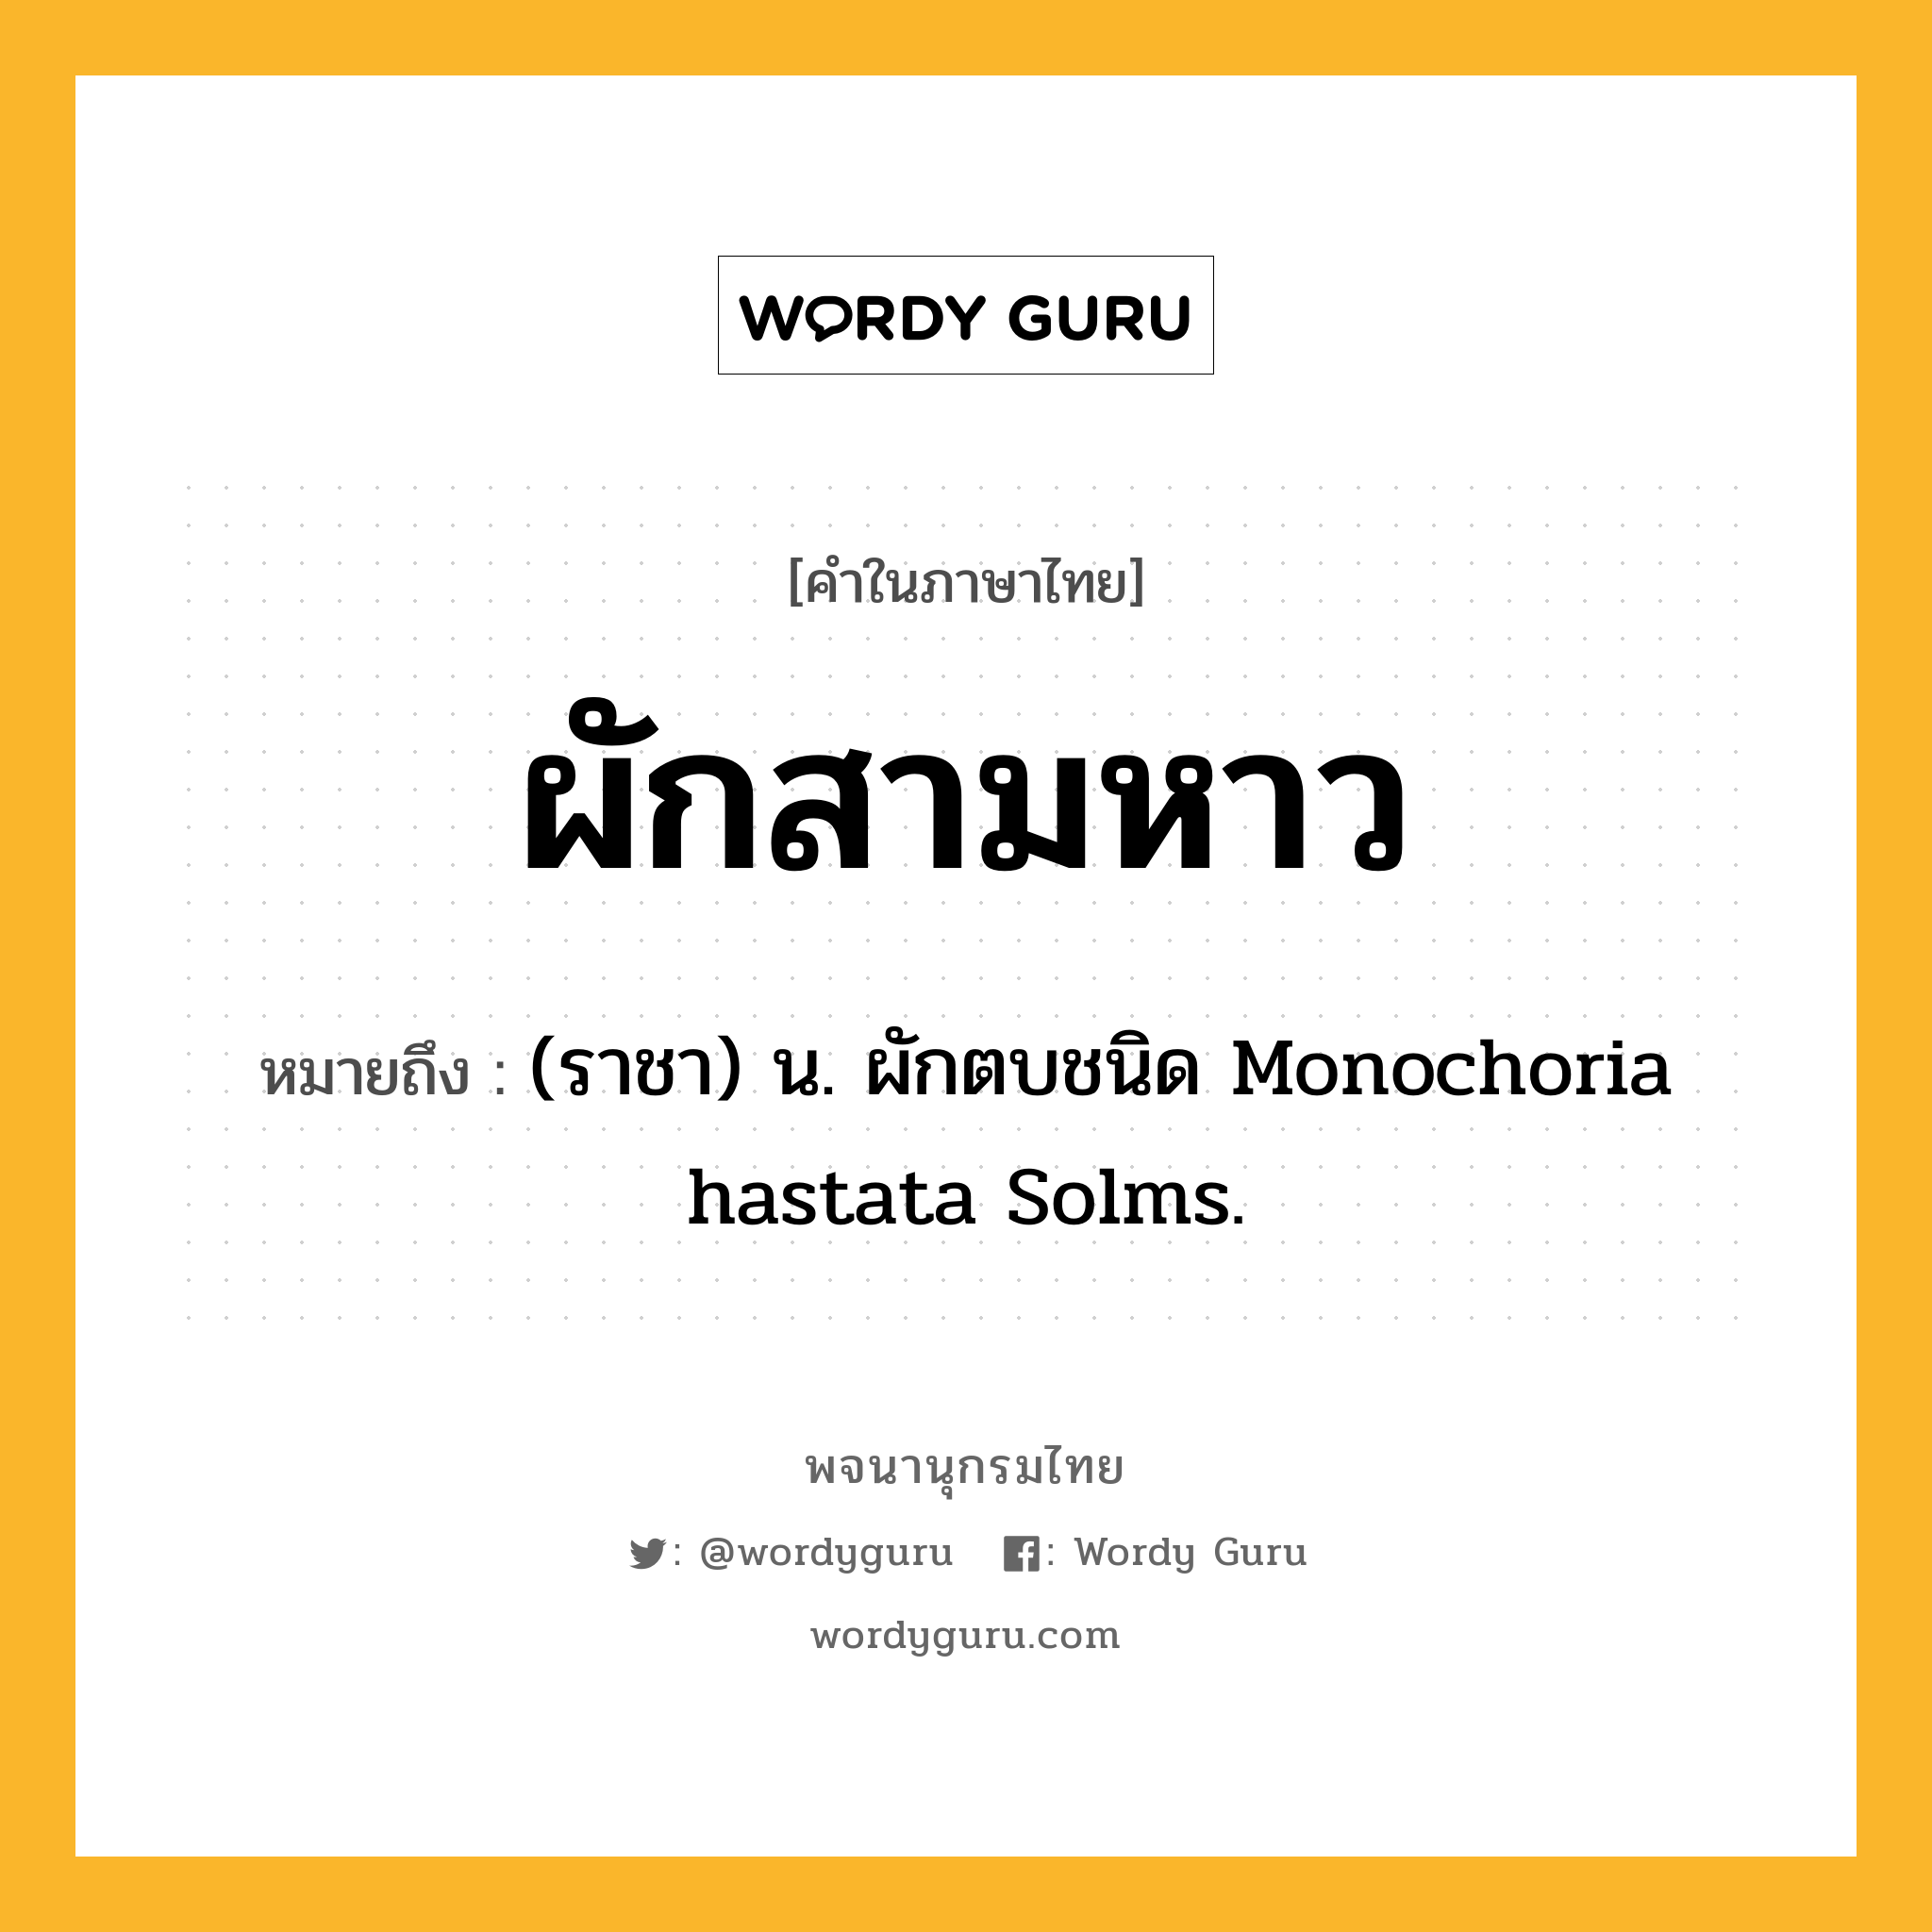 ผักสามหาว หมายถึงอะไร?, คำในภาษาไทย ผักสามหาว หมายถึง (ราชา) น. ผักตบชนิด Monochoria hastata Solms.